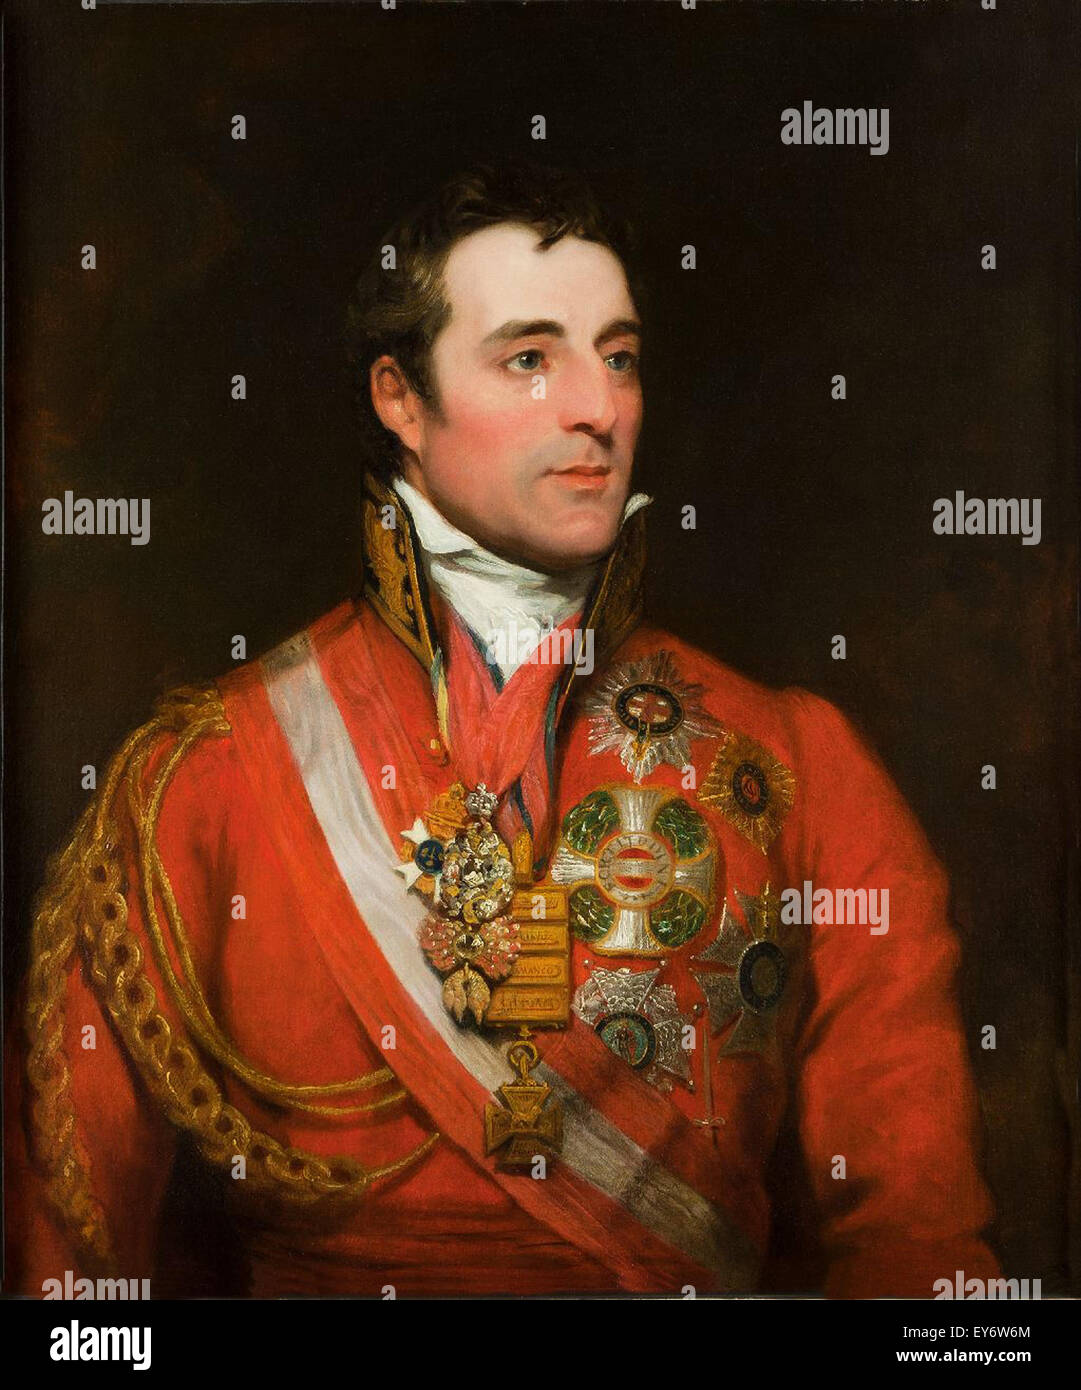 El mariscal de campo Arthur Wellesley el primer duque de Wellington, vistiendo el uniforme de Mariscal de campo con la Orden del Toisón de Oro, la estrella de la orden de la Liga y otras decoraciones, por Thomas Phillips. Foto de stock